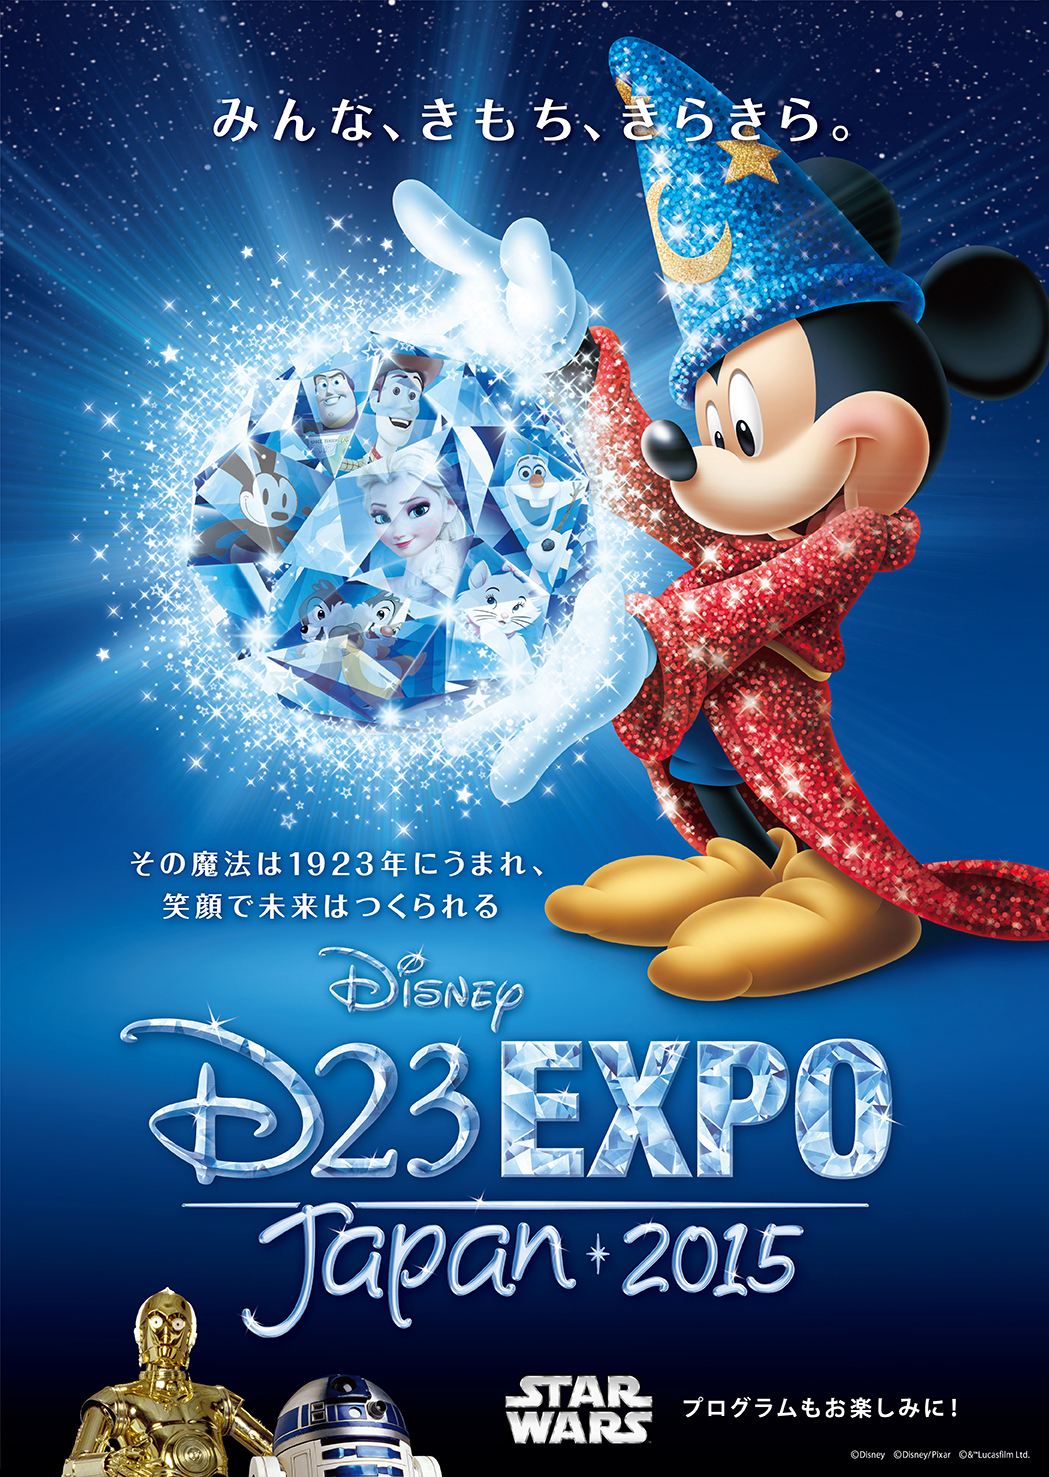 Disney Announces D23 Expo Japan 2015 | Business Wire